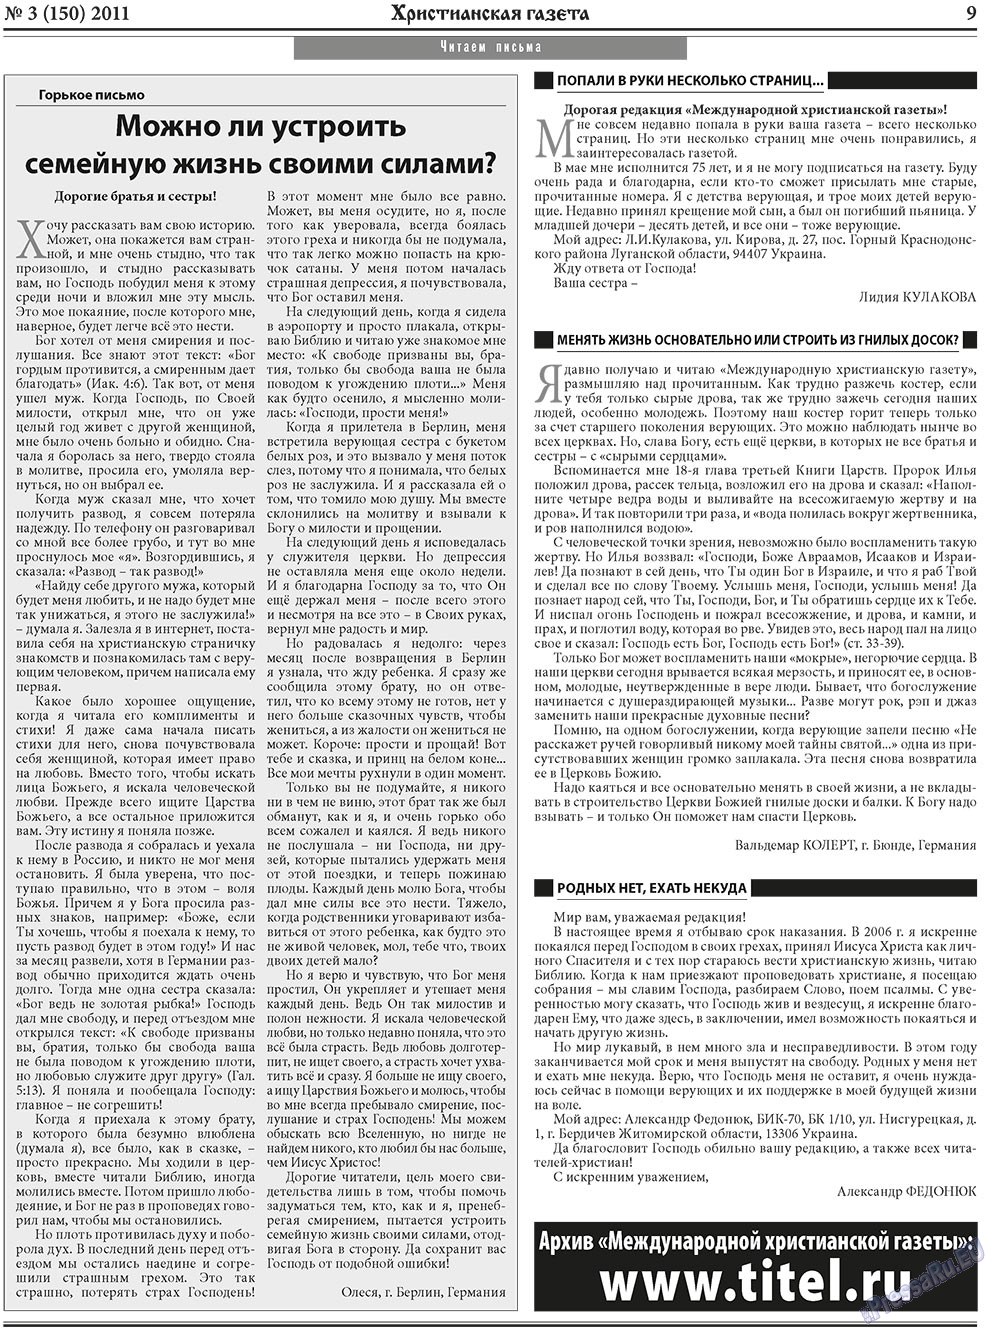 Христианская газета, газета. 2011 №3 стр.9